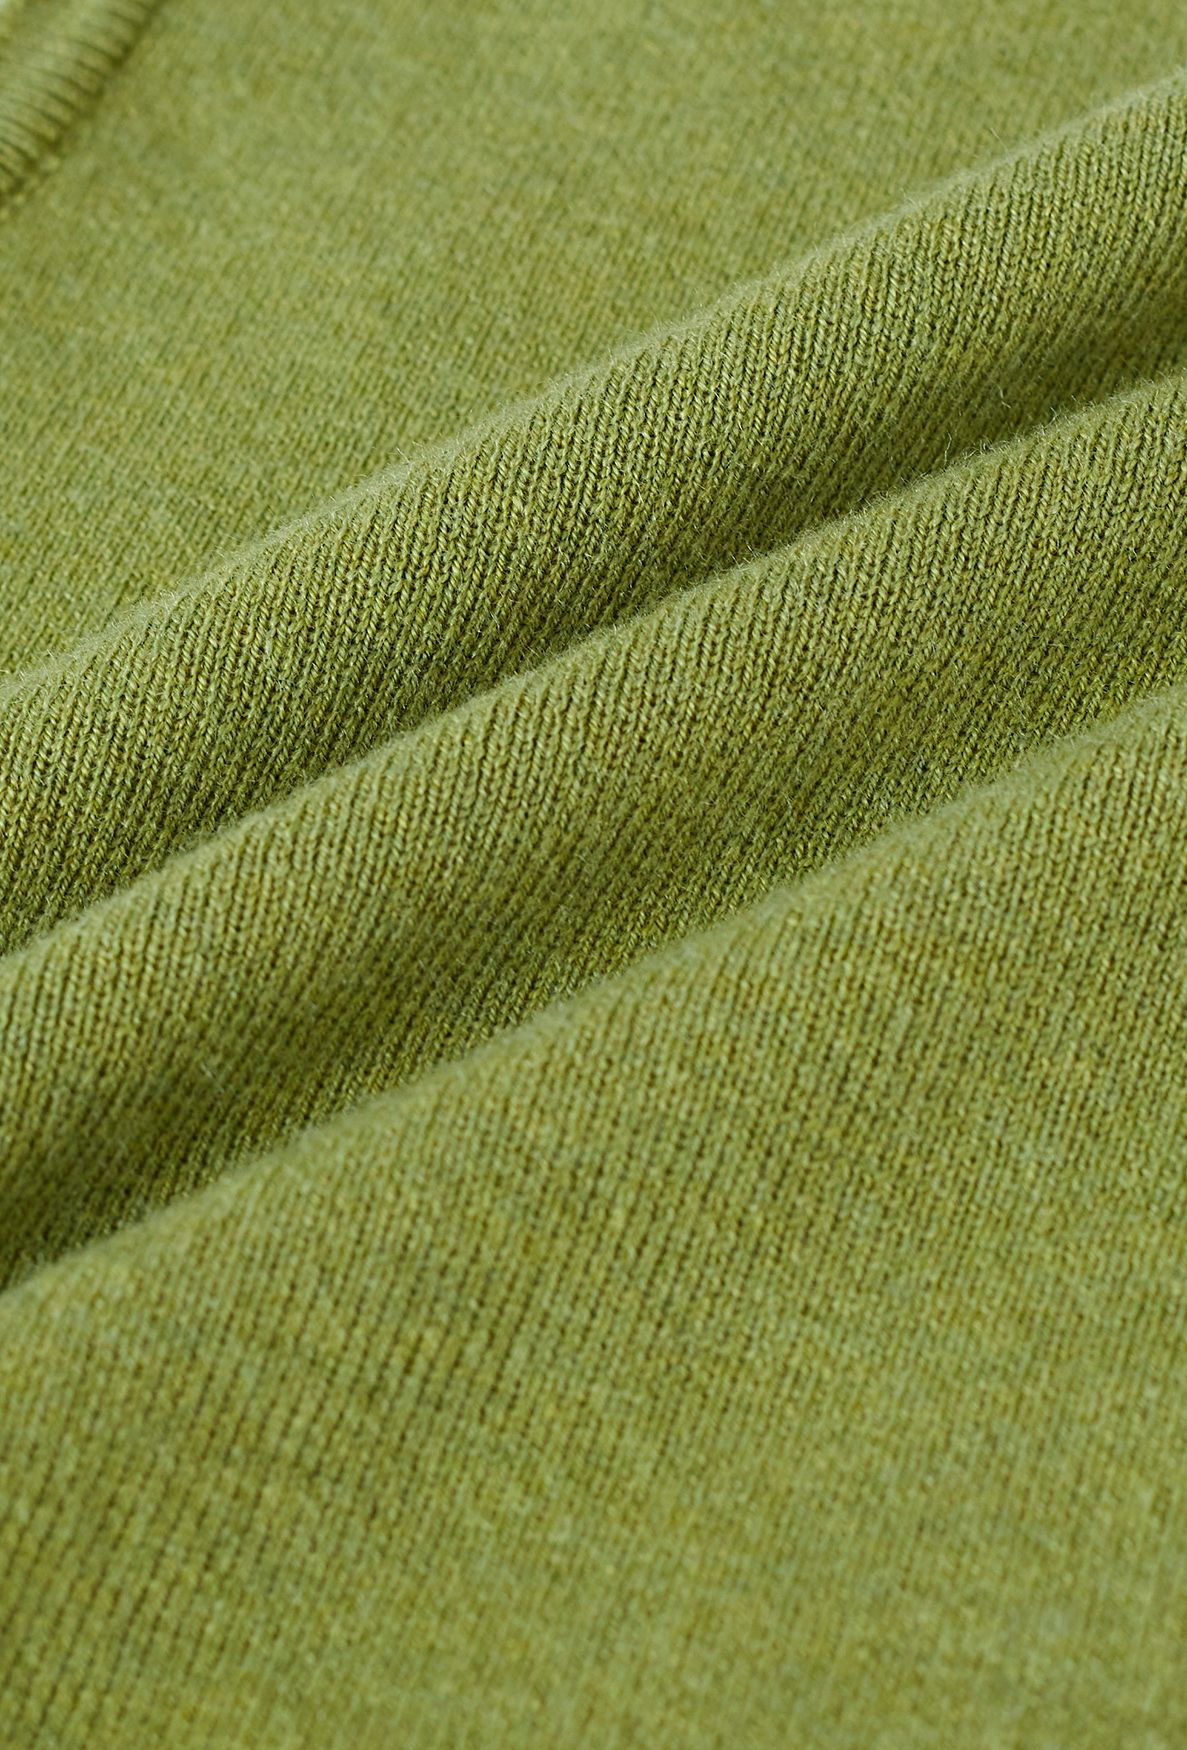 Débardeur en tricot Lithesome Comfort en vert